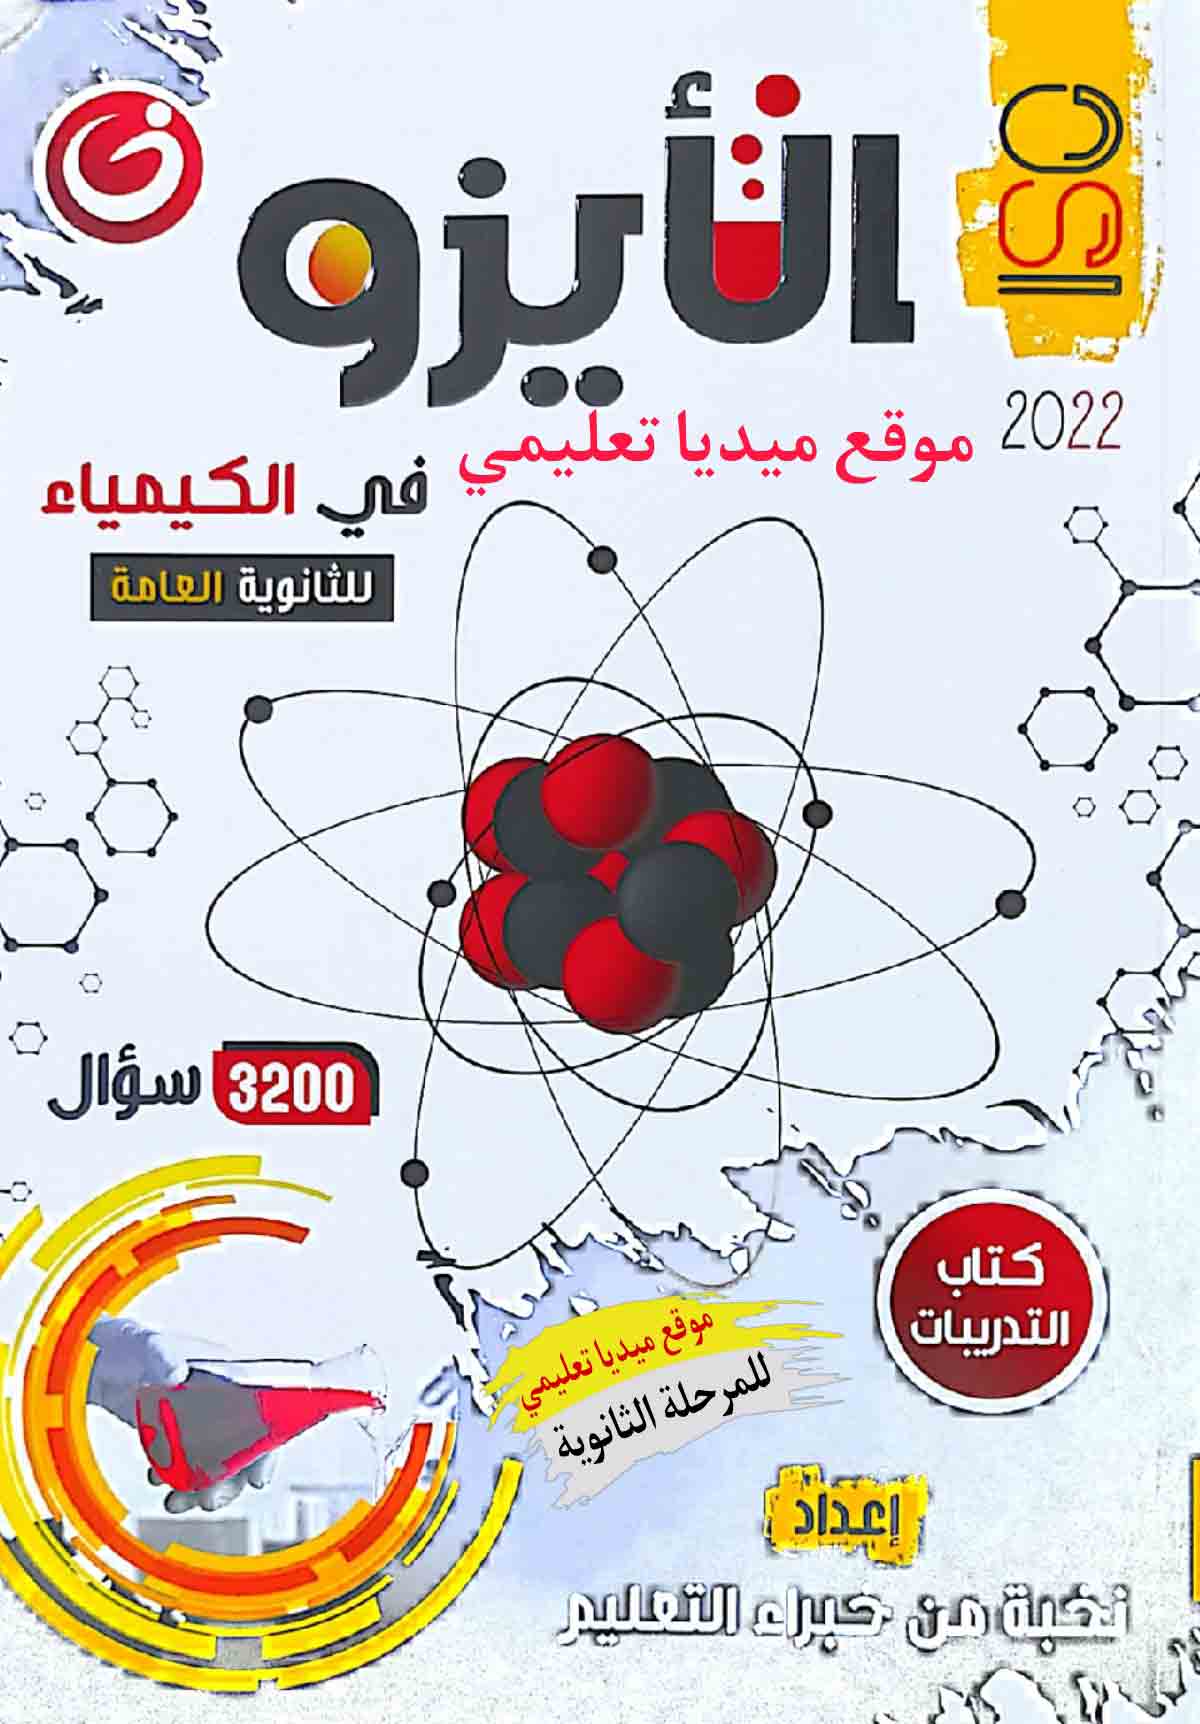 كتاب الأيزو في الكيمياء الصف الثالث الثانوي 2022 | جزء التدريبات | ميديا تعليمي | الكيمياء الصف الثالث الثانوى الترمين | طالب اون لاين